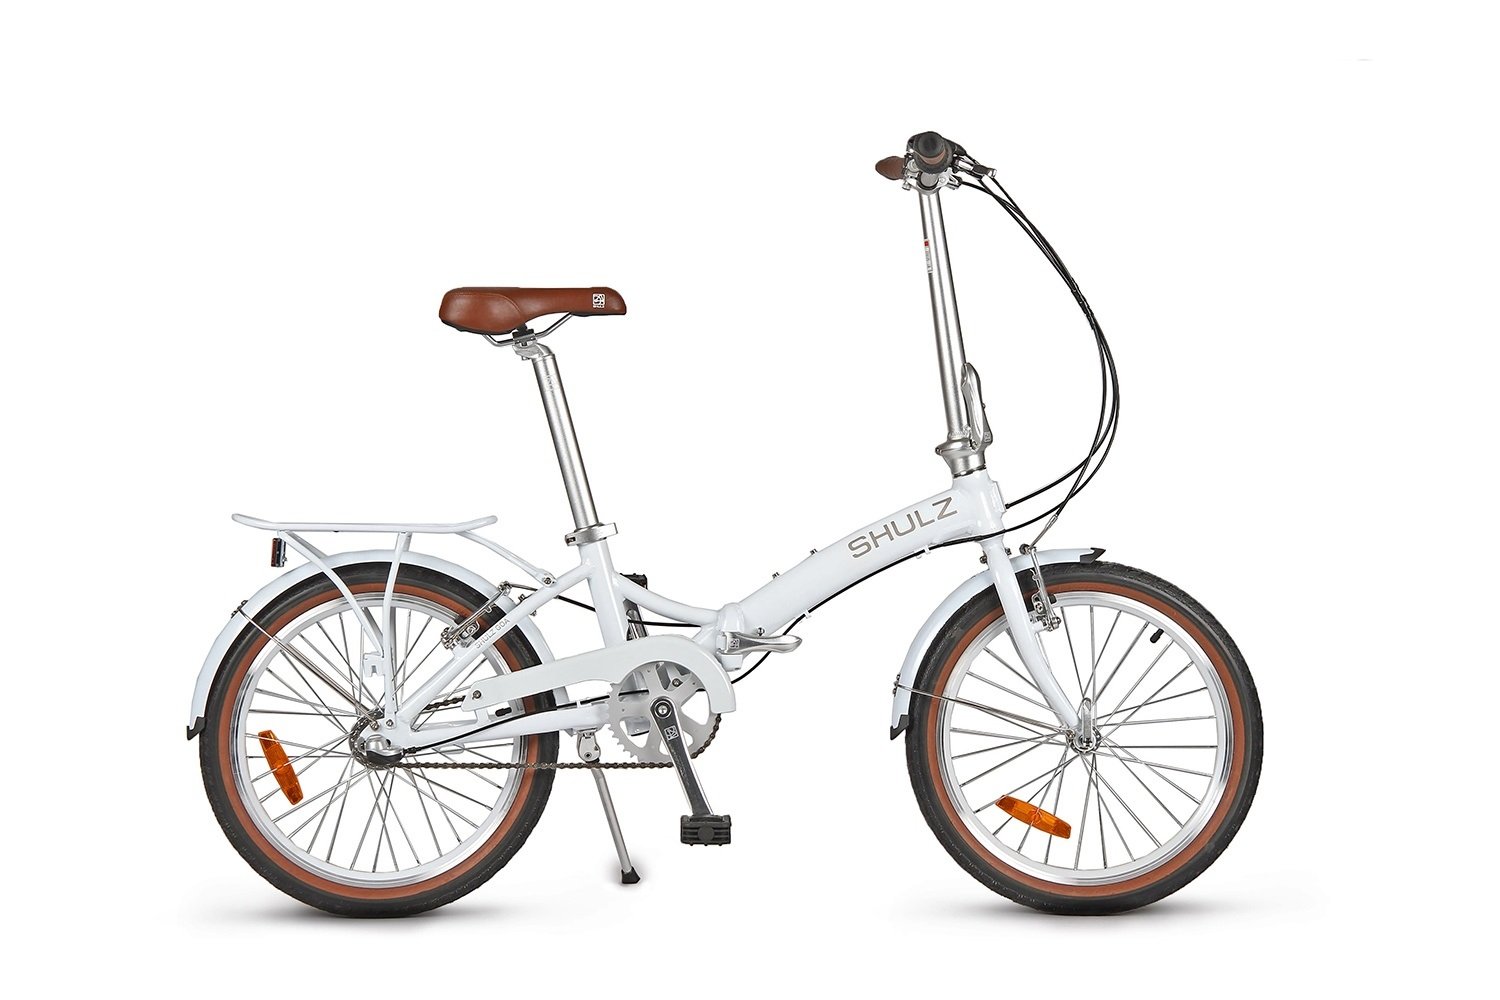 Складной велосипед SHULZ GOA V '16 складной белый, 2021, 16GVWH журнал звезда 2 2021